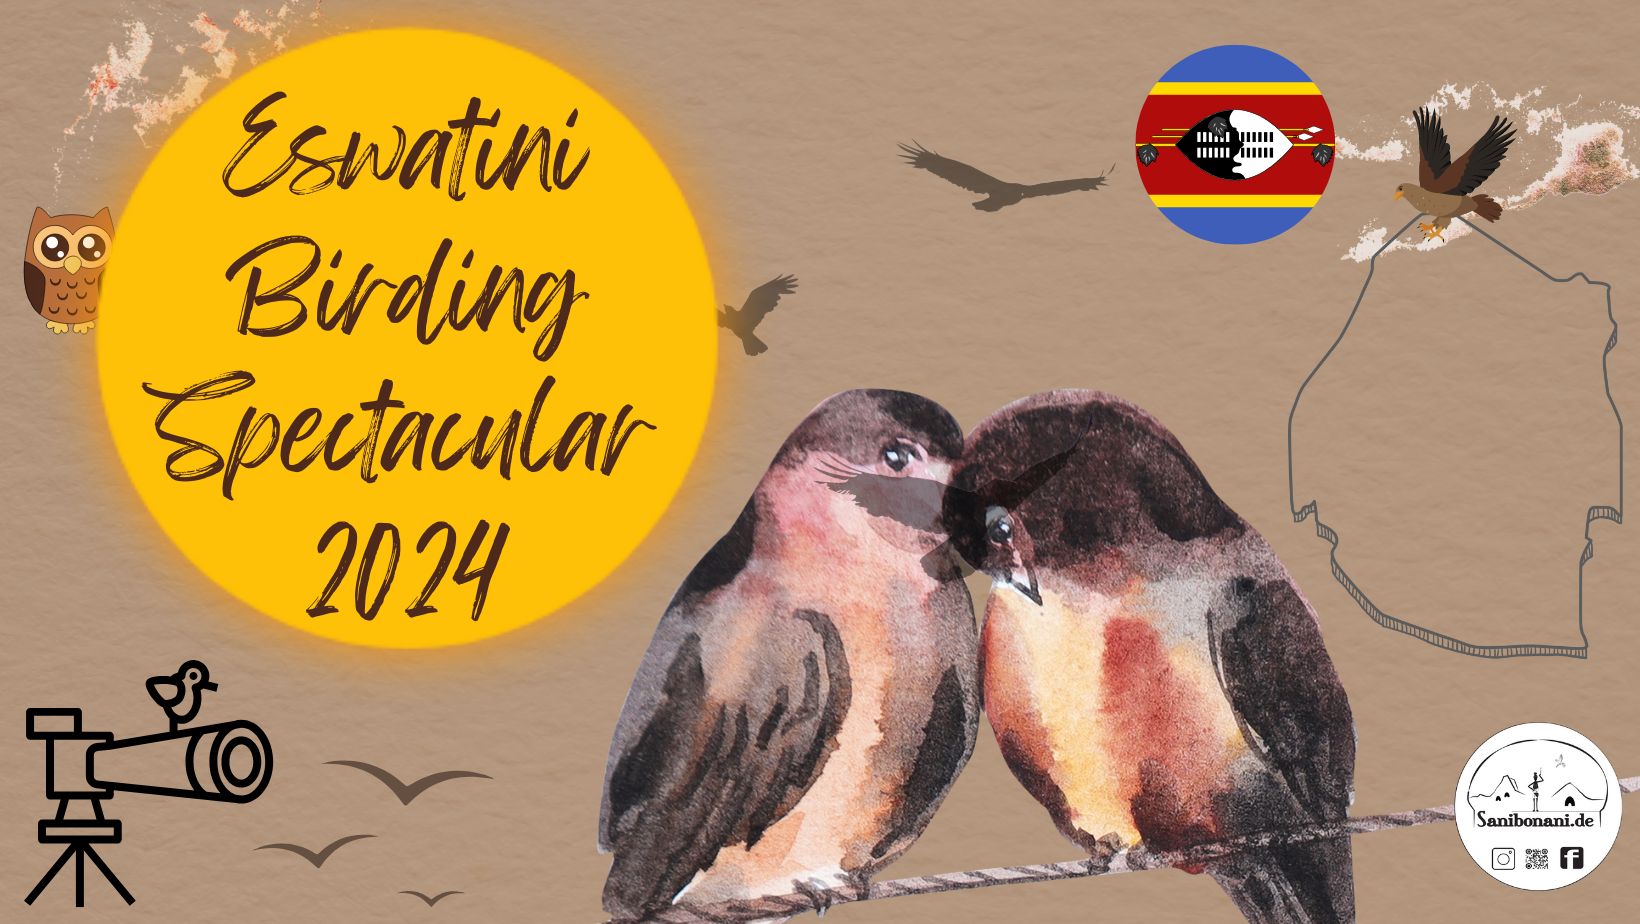 Eswatini Birding Spectacular 2024